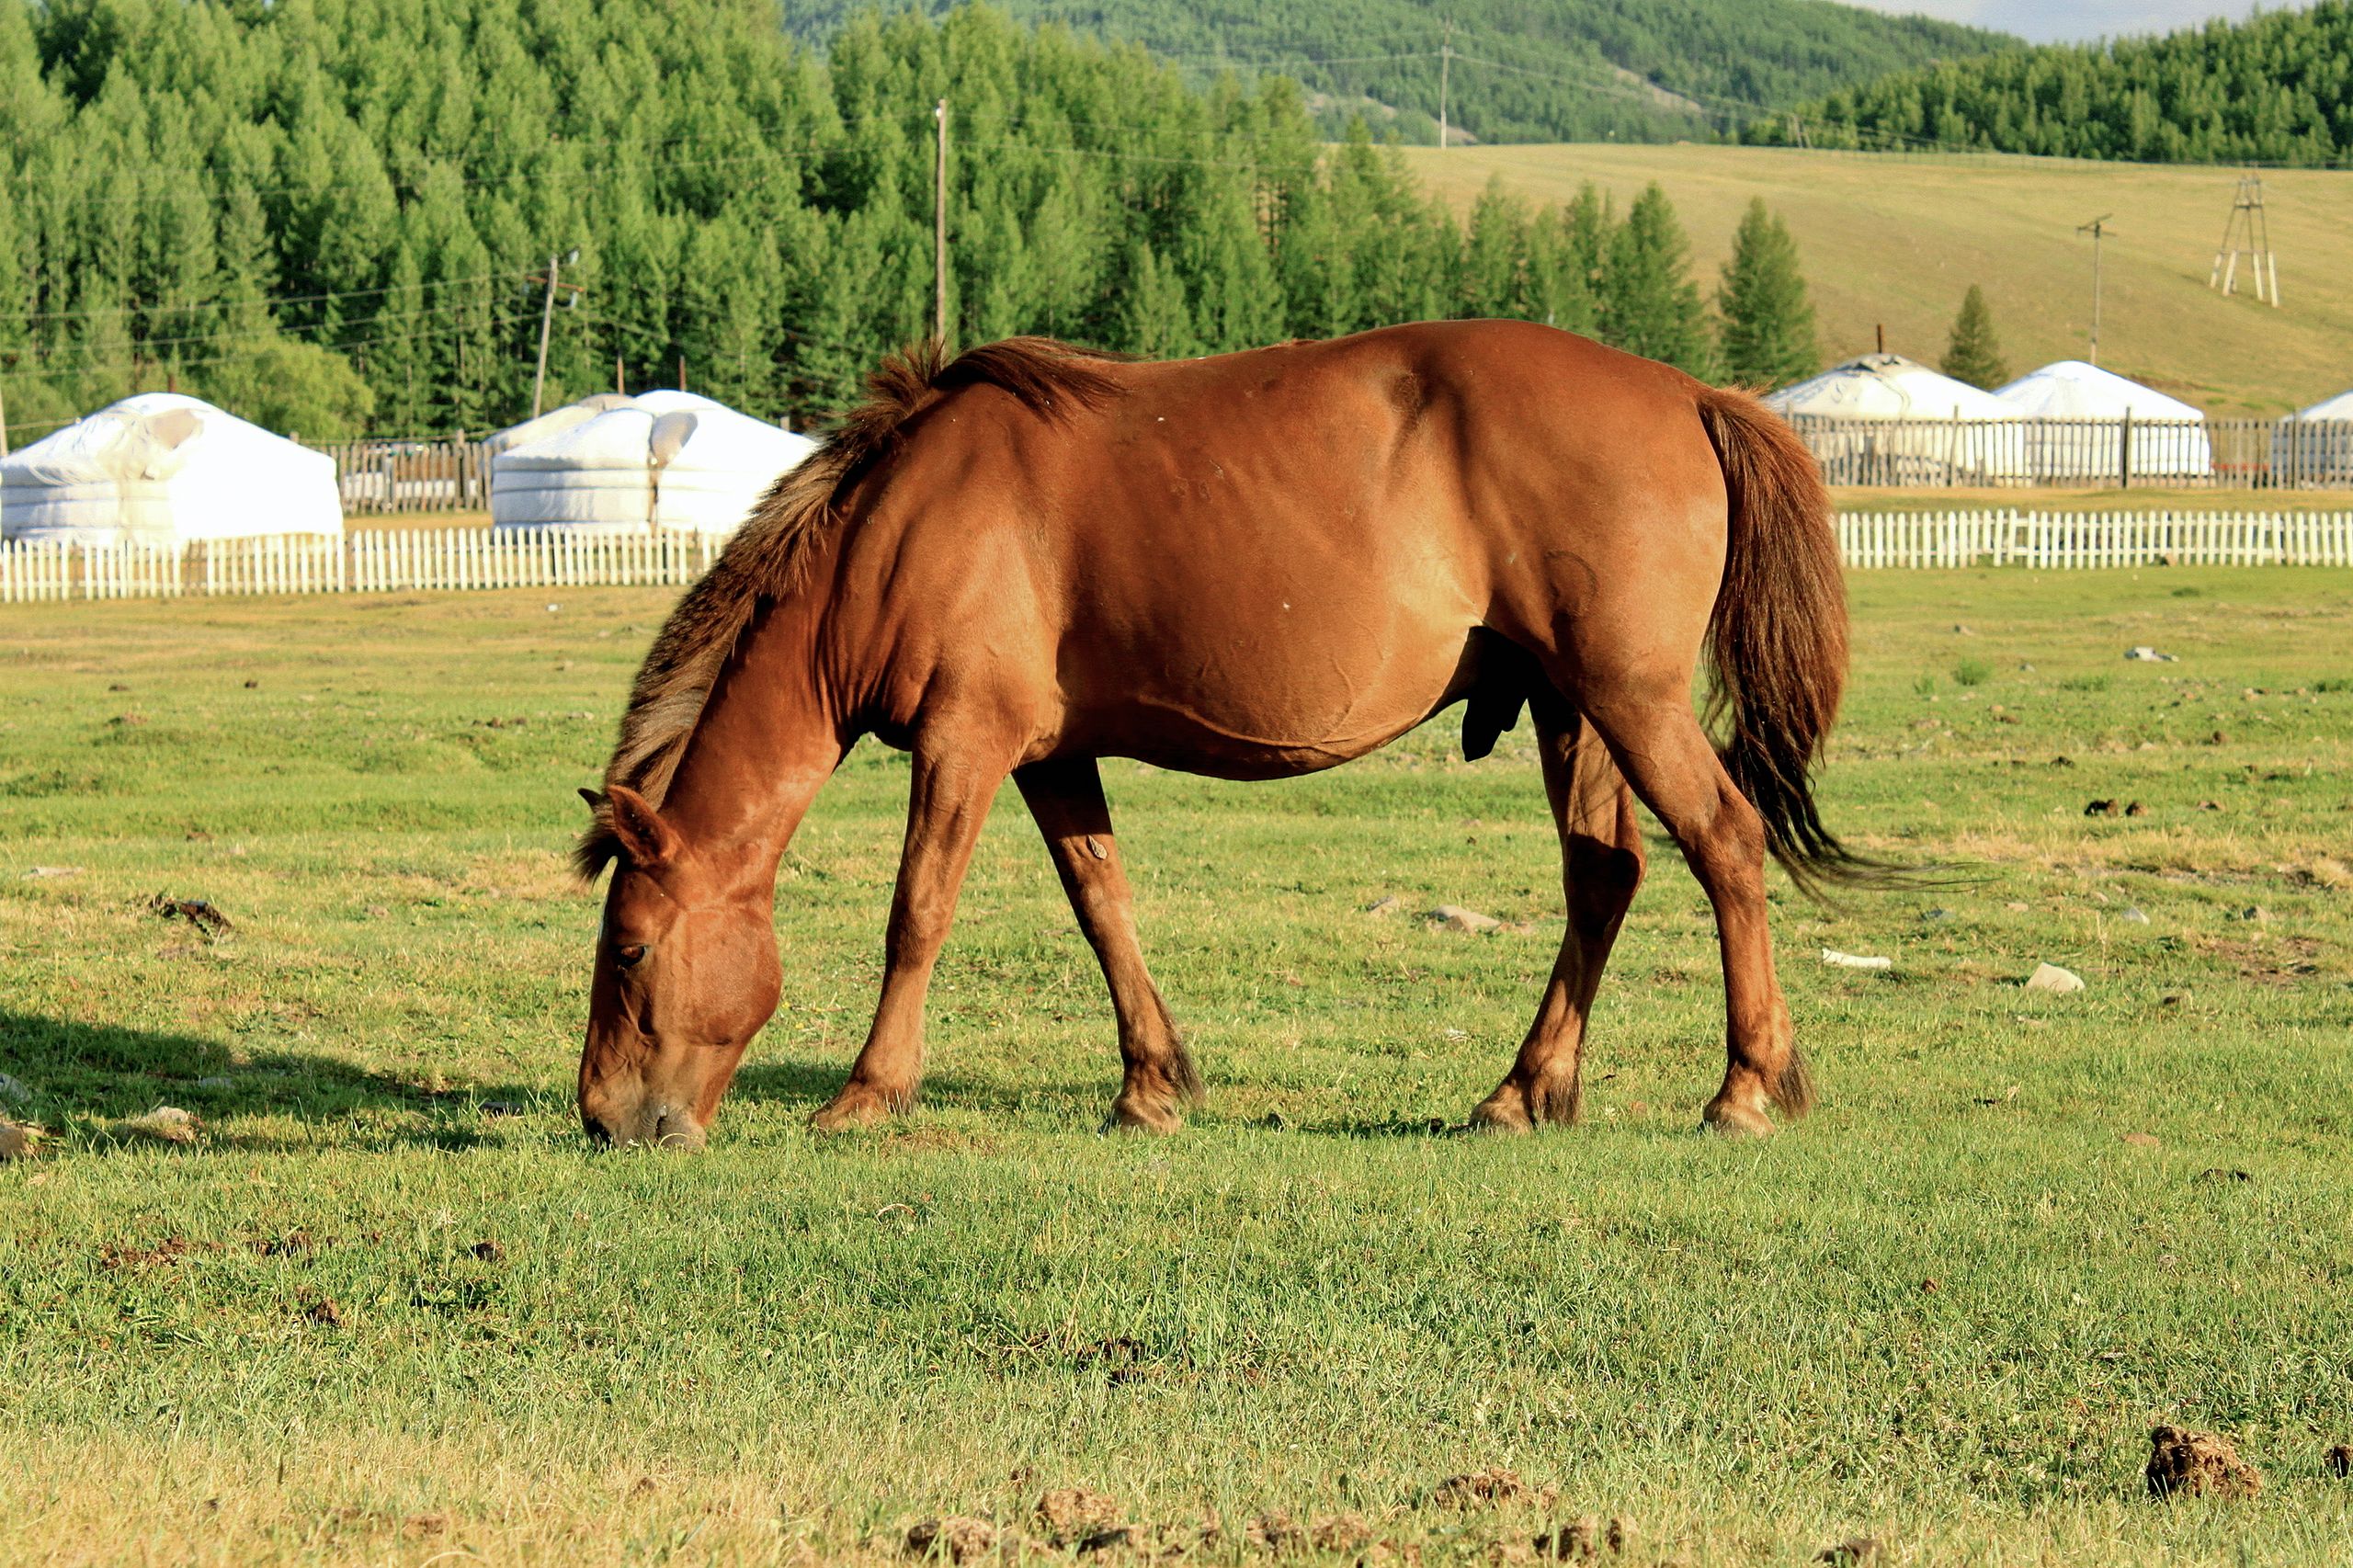 A Mongol horse grazing on a green field.